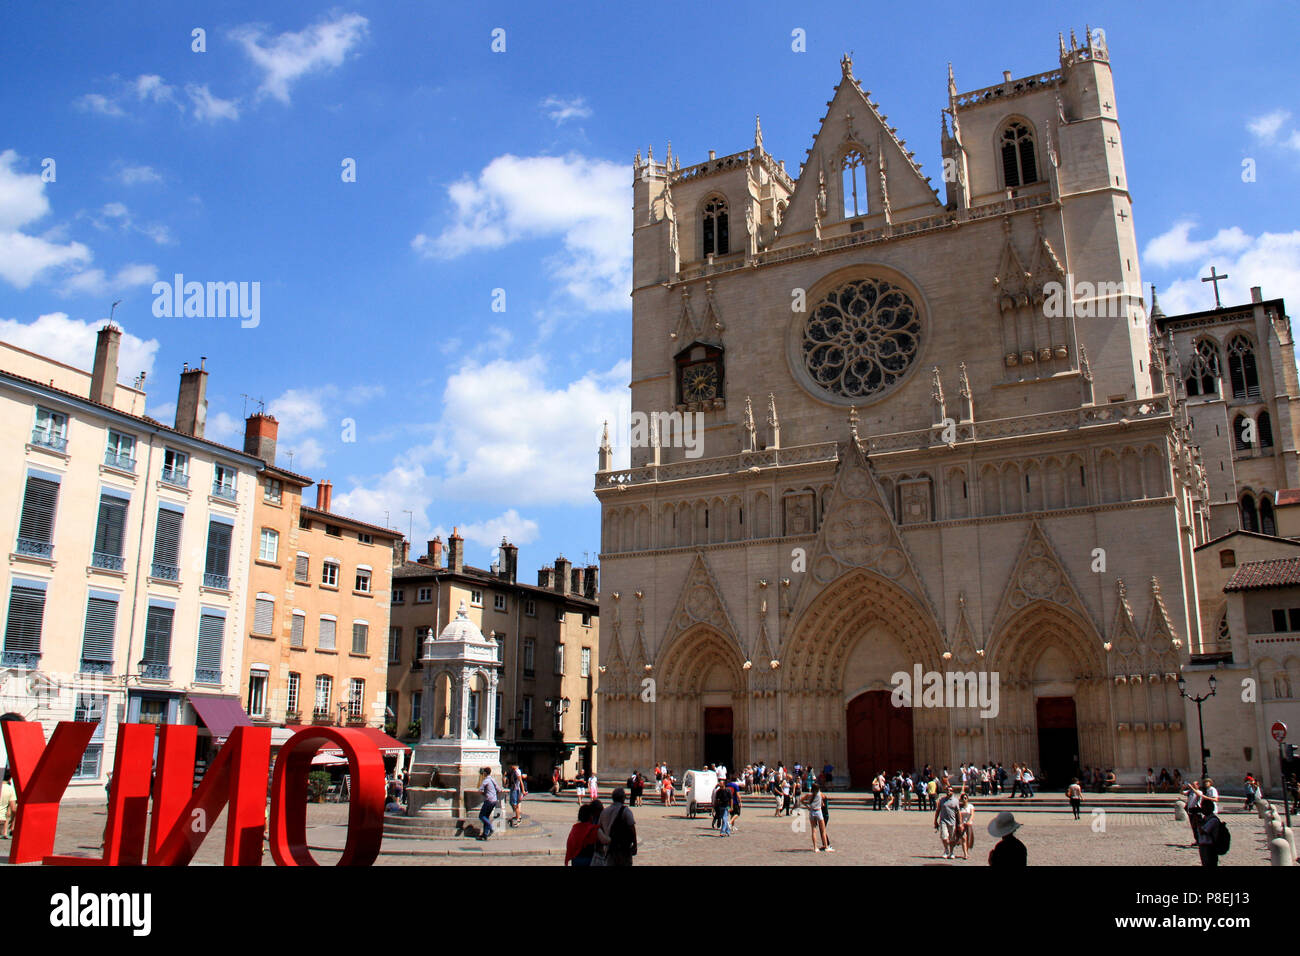 Cathédrale Saint-Jean-Baptiste de Lyon ou de la cathédrale de Lyon (lettrage géant seulement 'LYON' dans l'avant-plan), Ville de Lyon, France Banque D'Images